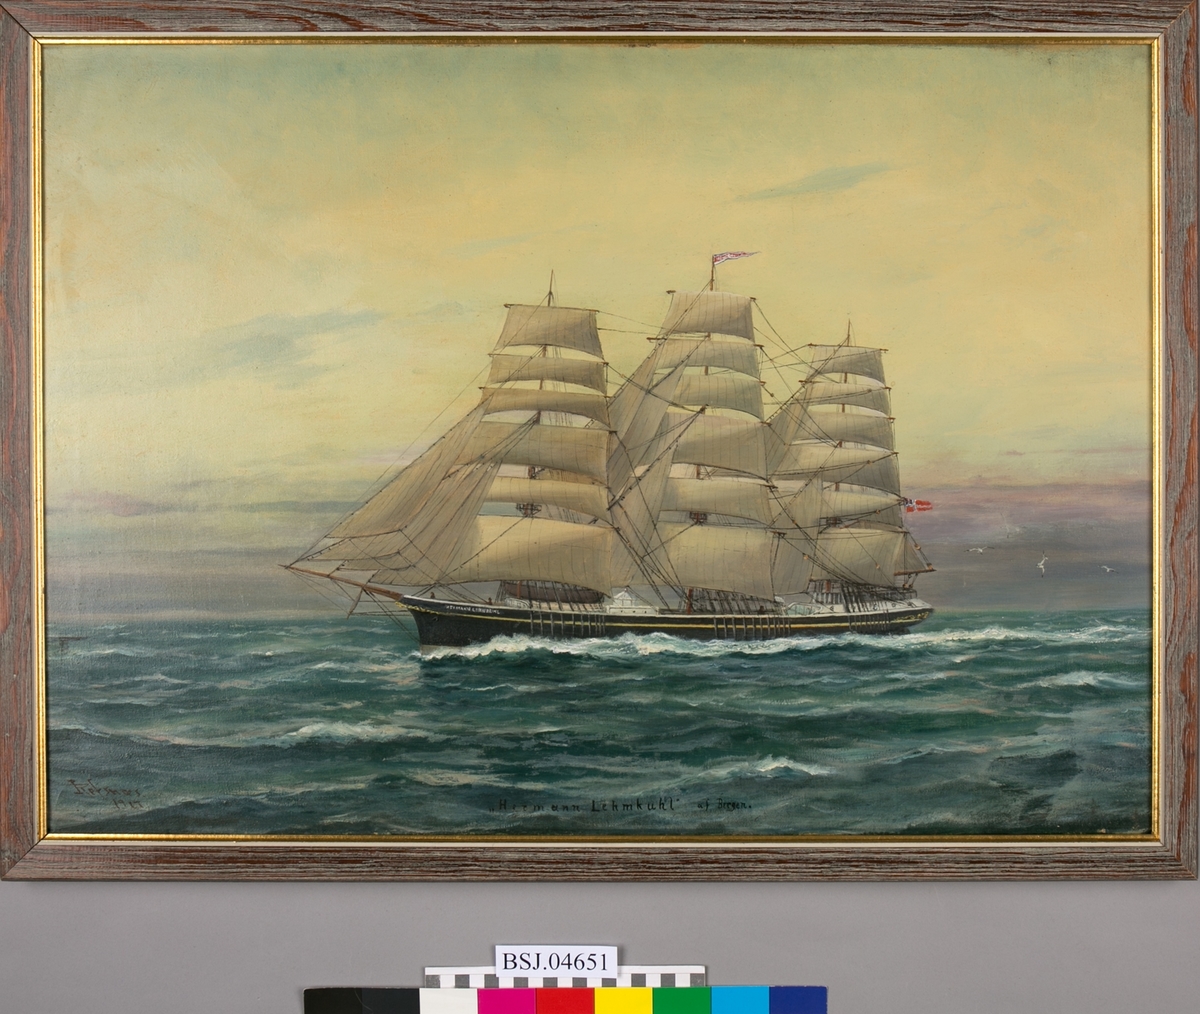 Fullrigger HERMAN LEHMKUHL på åpent hav. Full seilføring, og vimpel med skipets navn i masten. Norsk unionsflagg i akter (Sildesalaten). Motivet er sannsynligvis en kopi av et Sørvig-maleri (BSJ.00087).